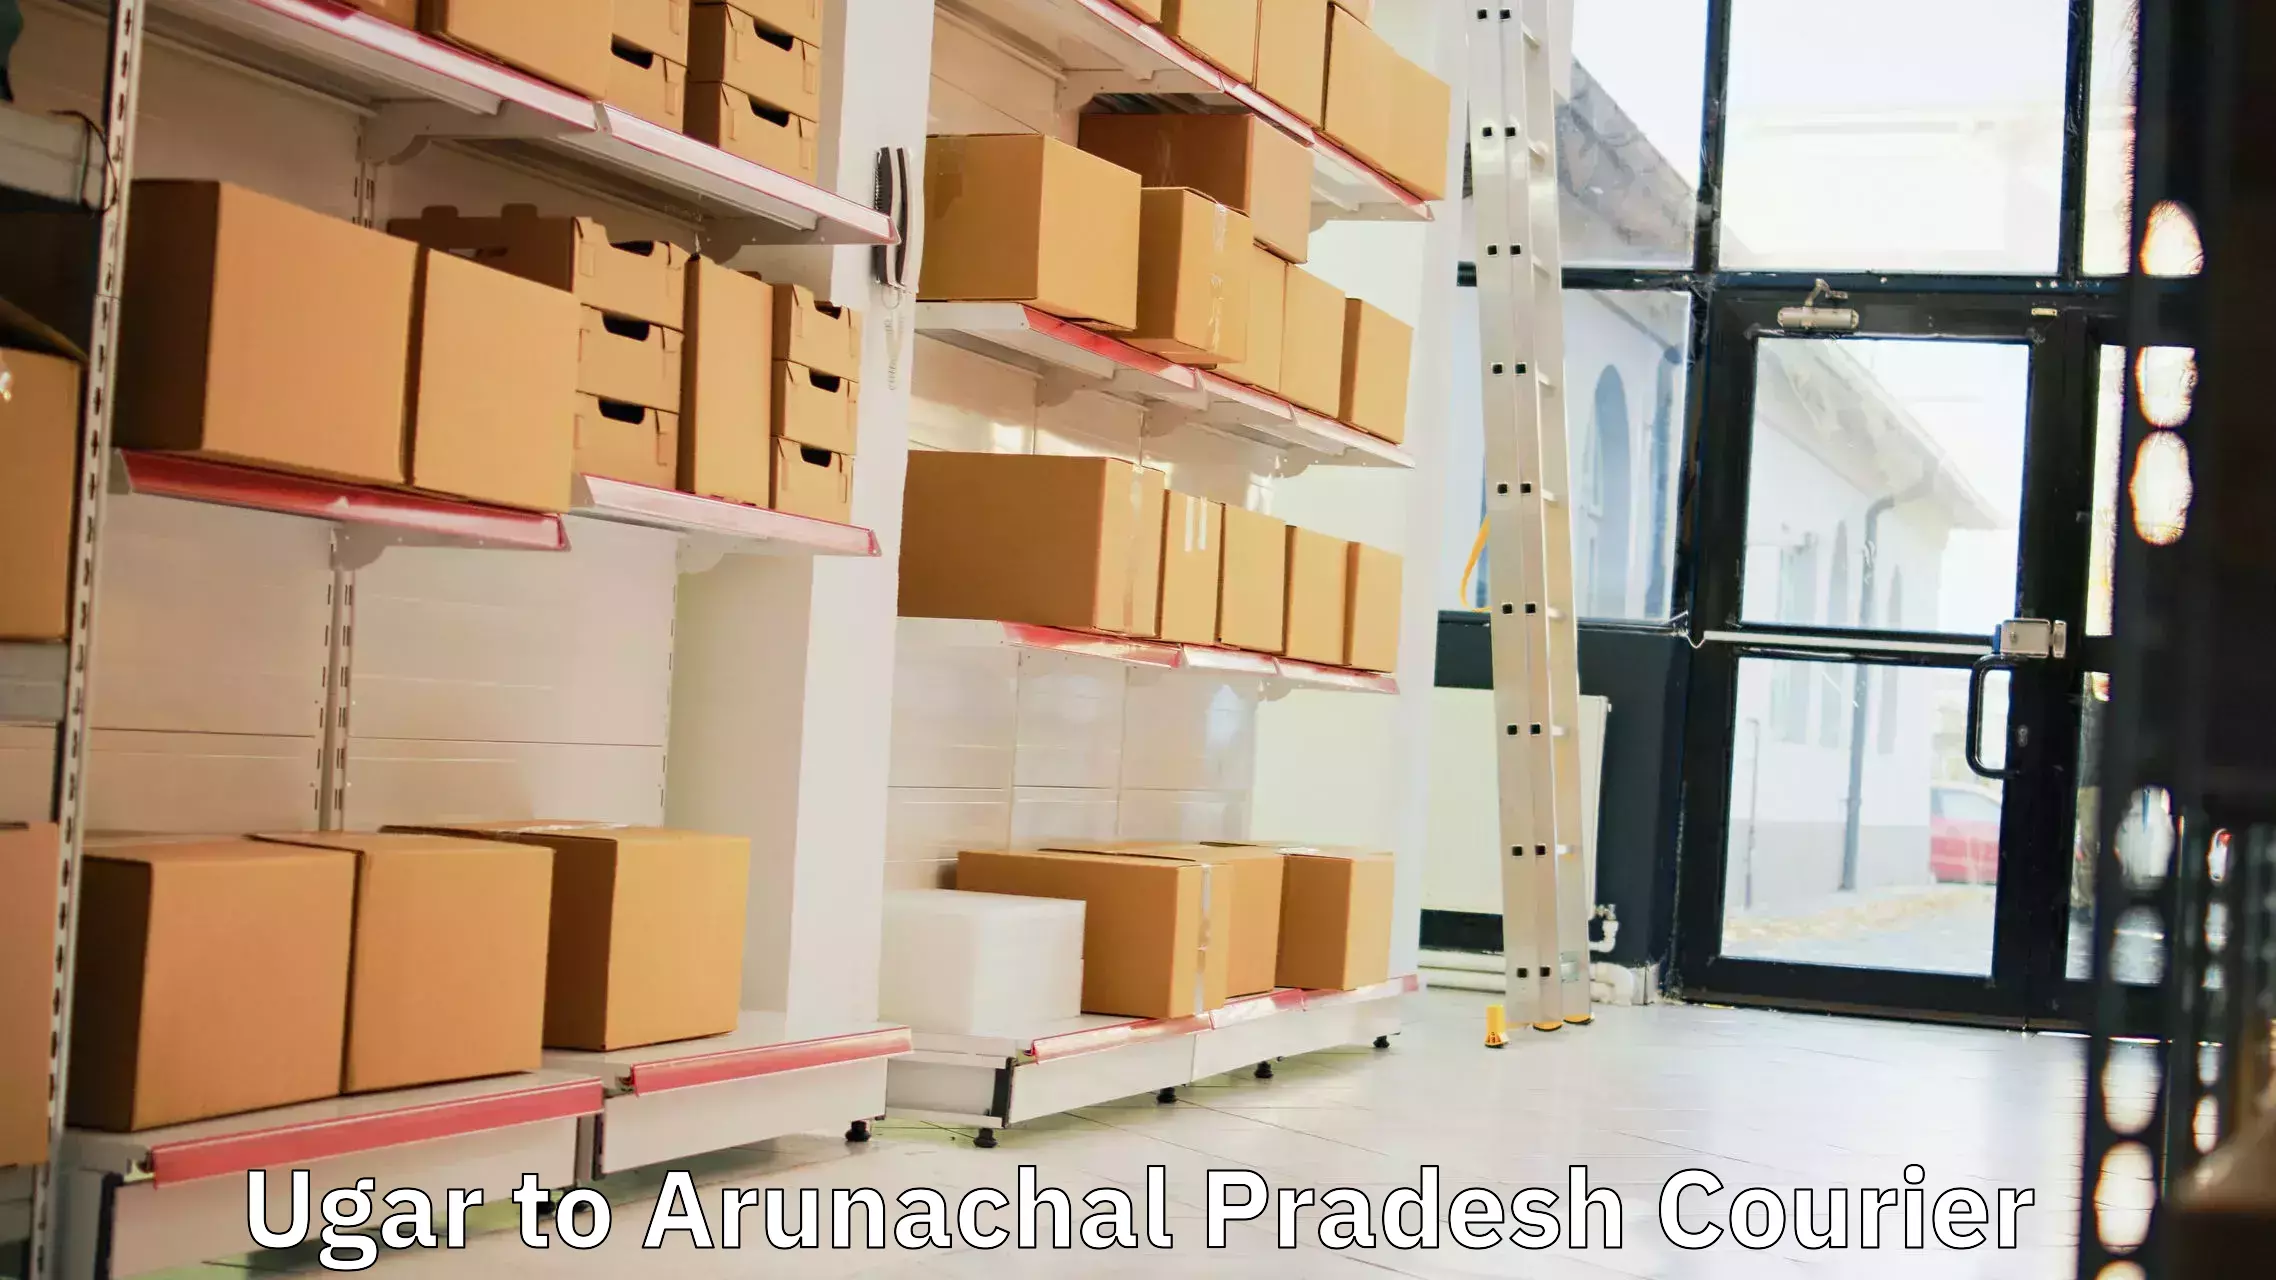 Efficient courier operations Ugar to Arunachal Pradesh